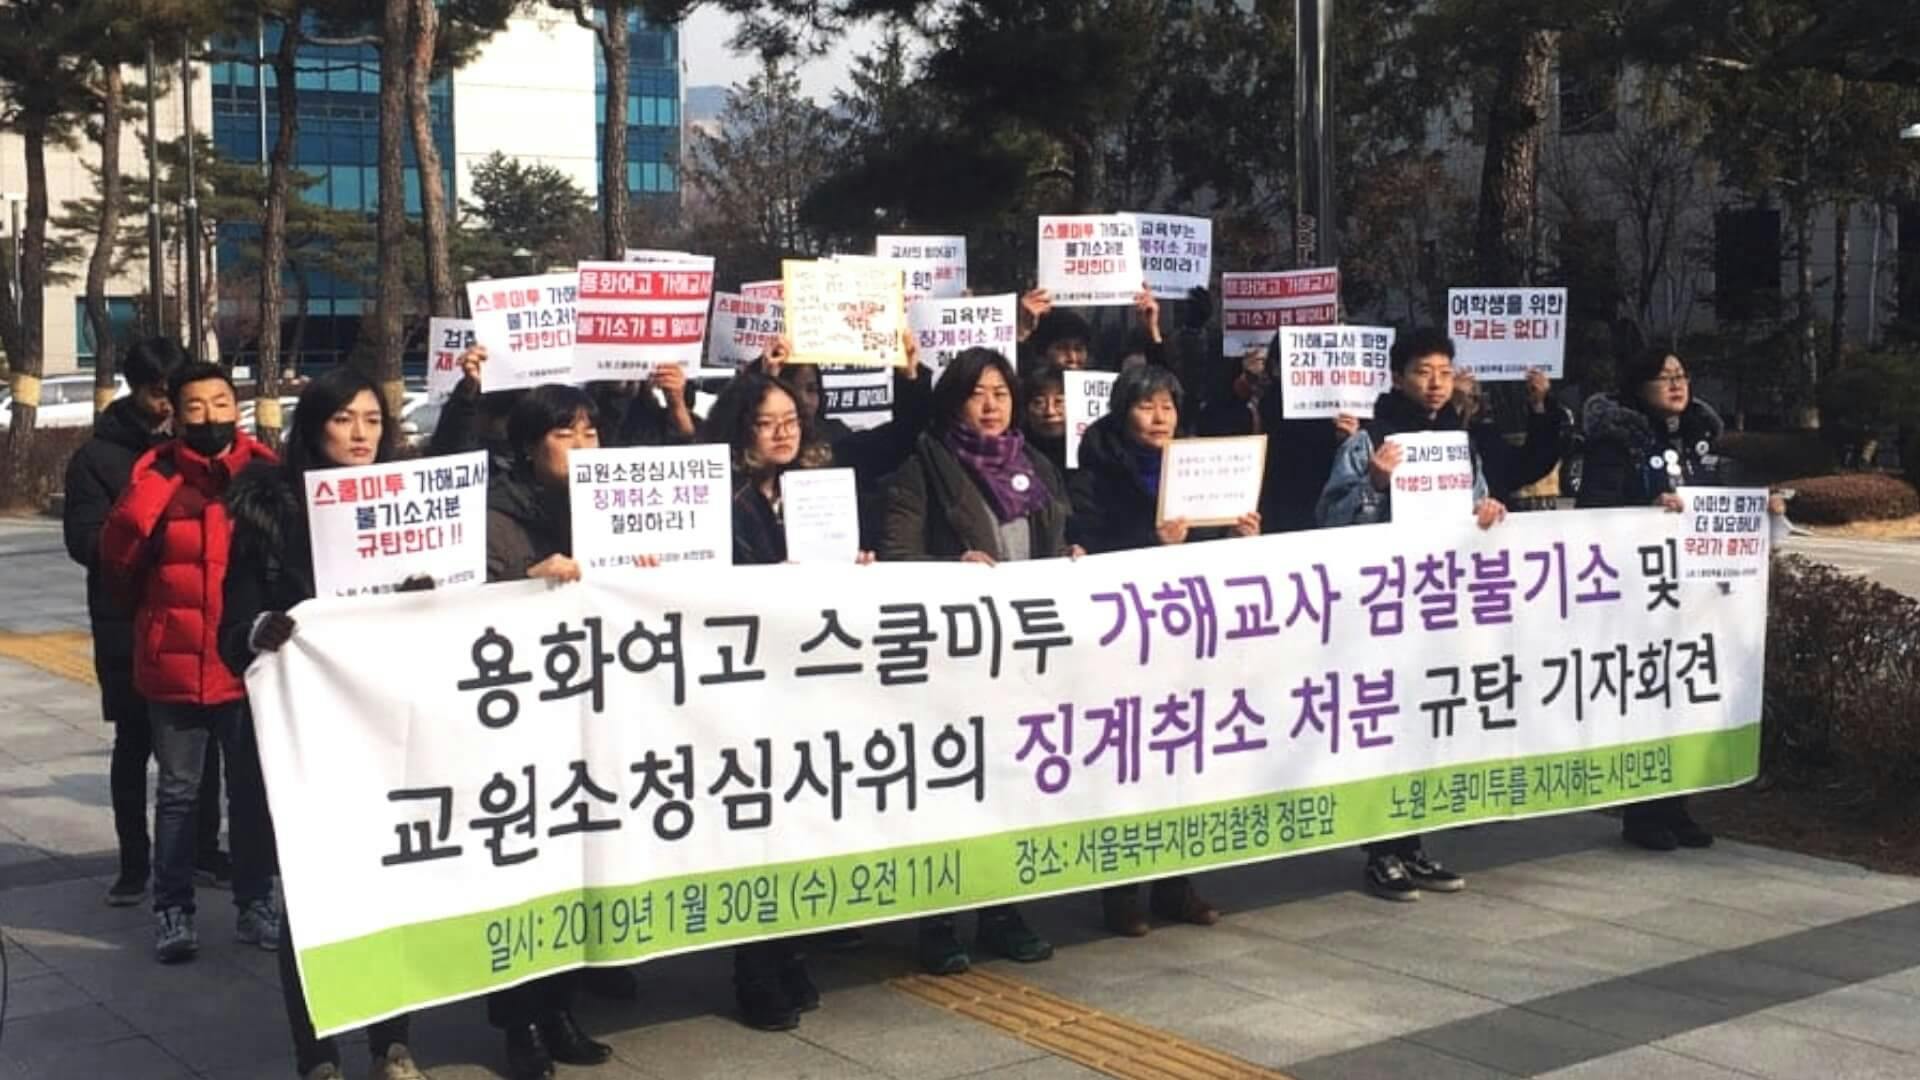 2019년 1월 30일, 노원시민모임이 재수사 촉구 및 가해 교사 파면 취소처분 항의 시위를 하고 있다. (ⓒ노원시민모임)